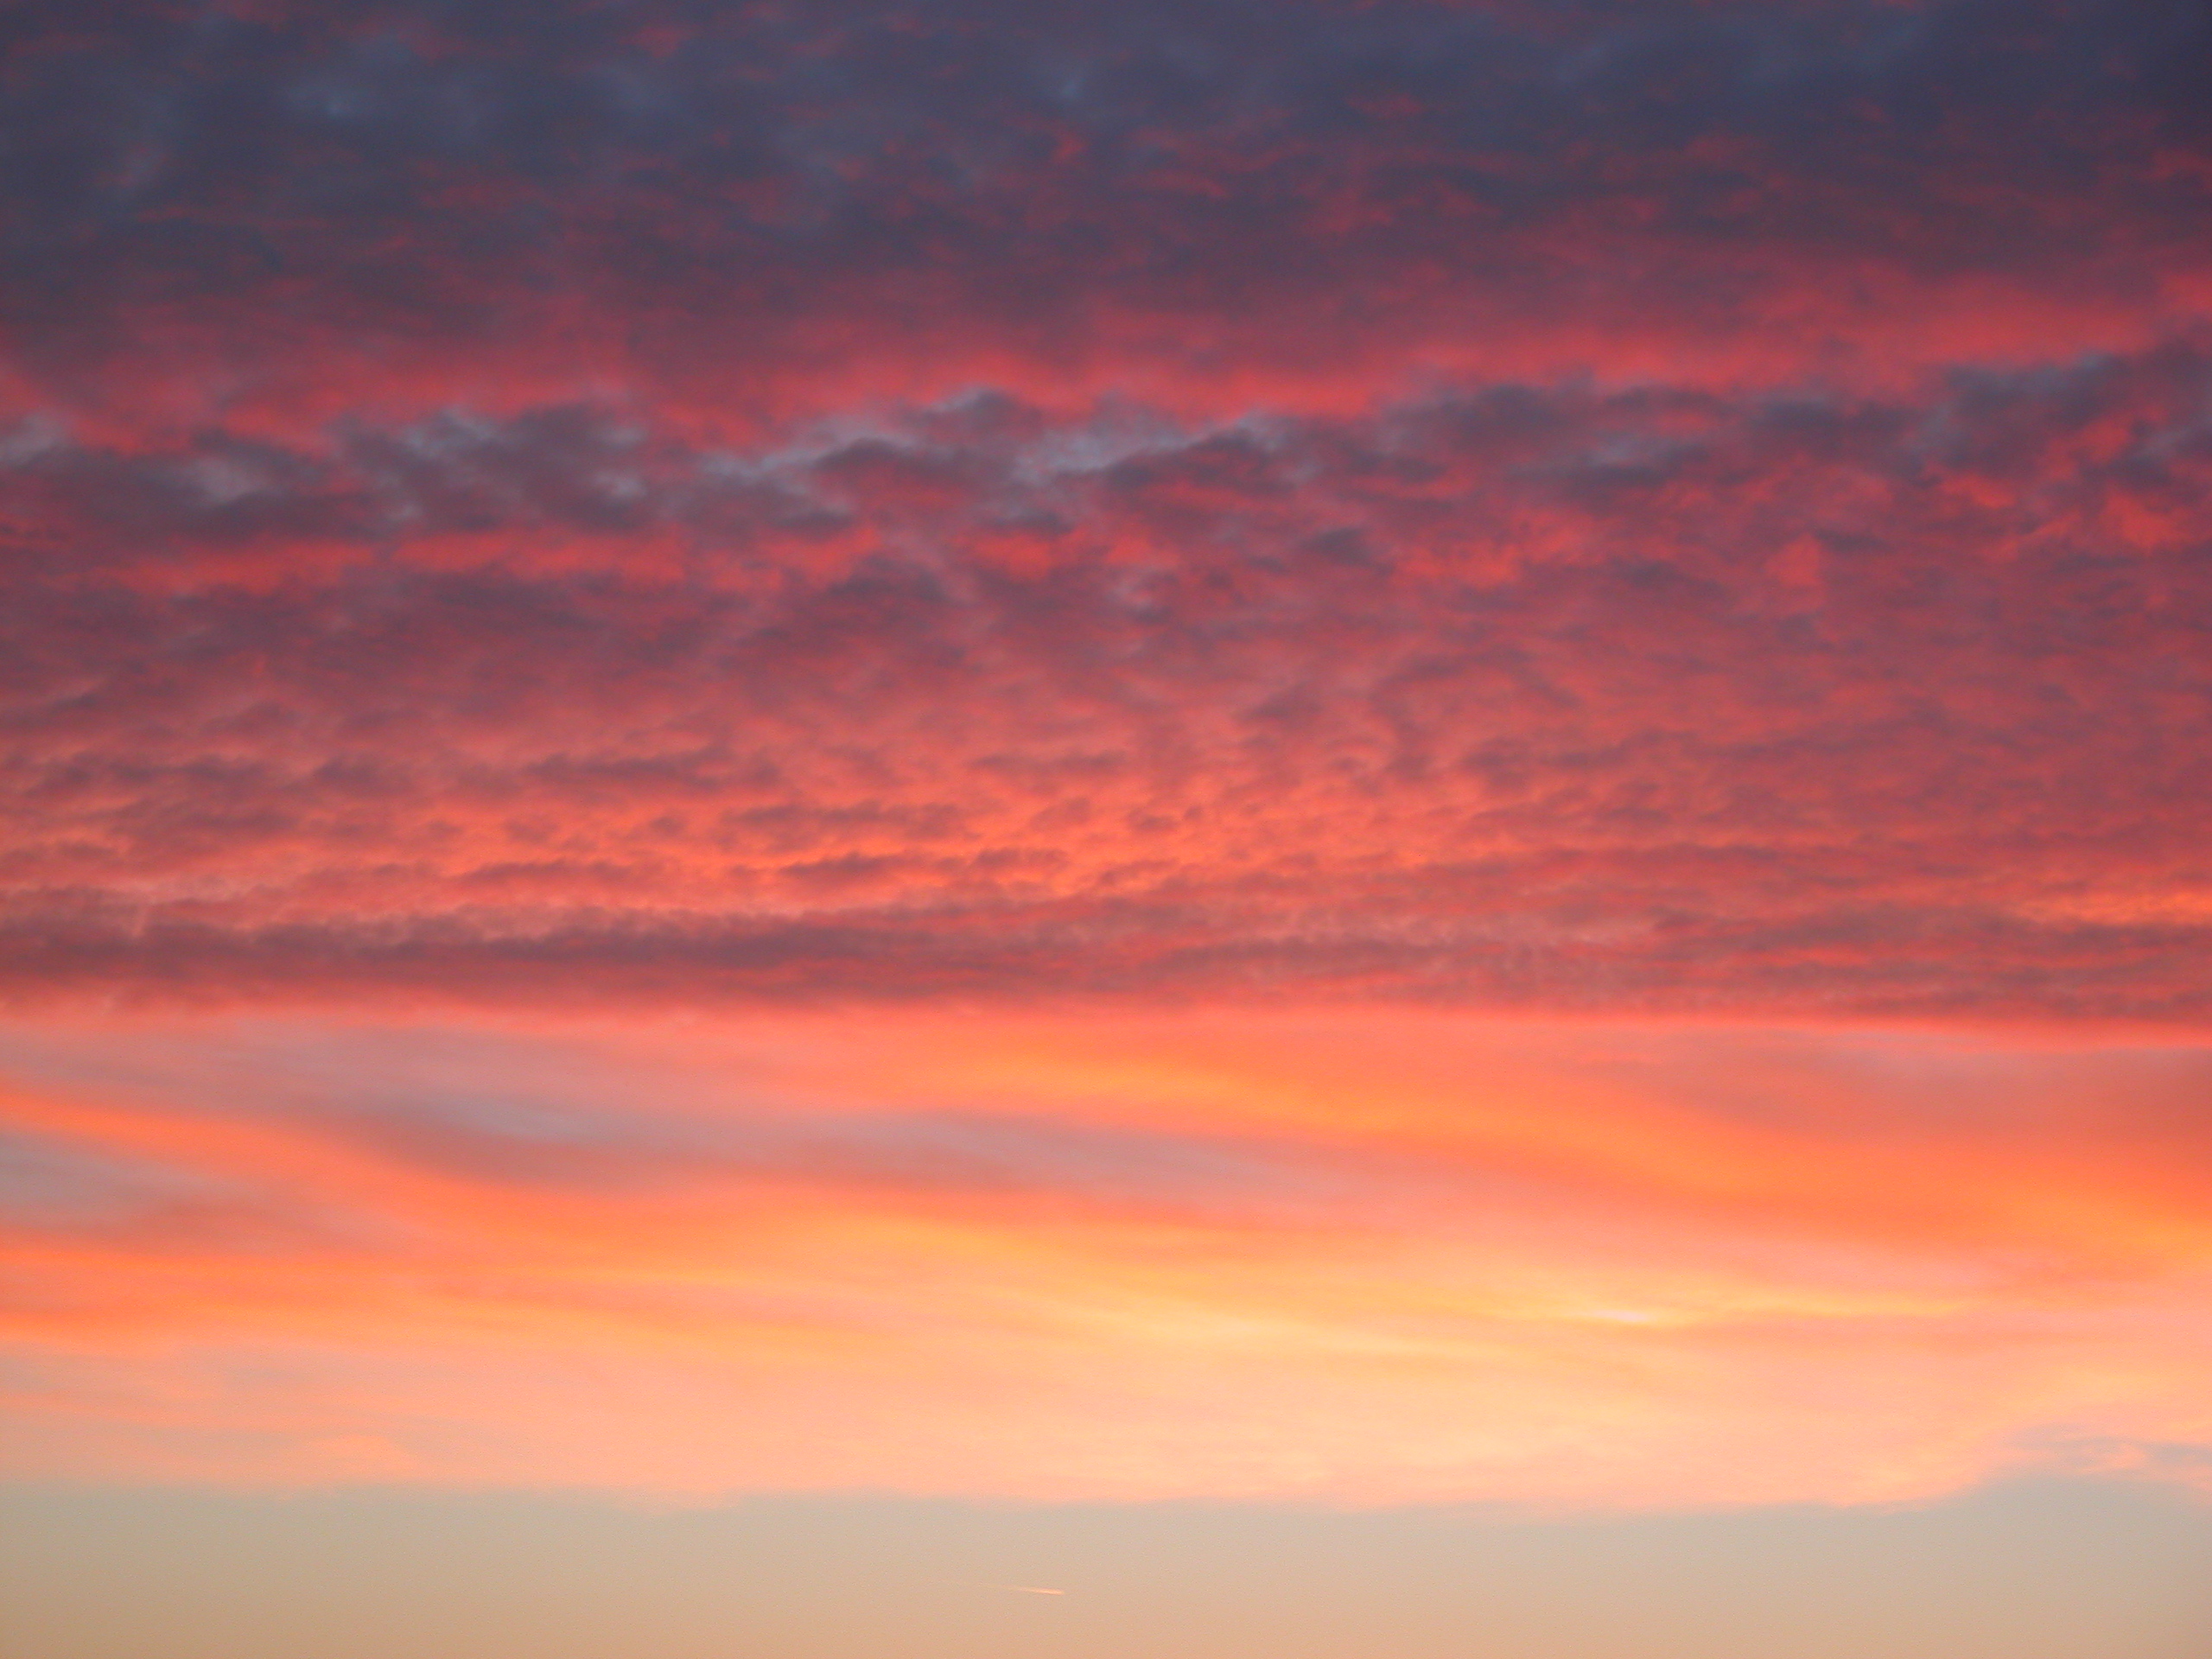 Image*After : photos : elements texture cloud clouds sunset sunrise ...